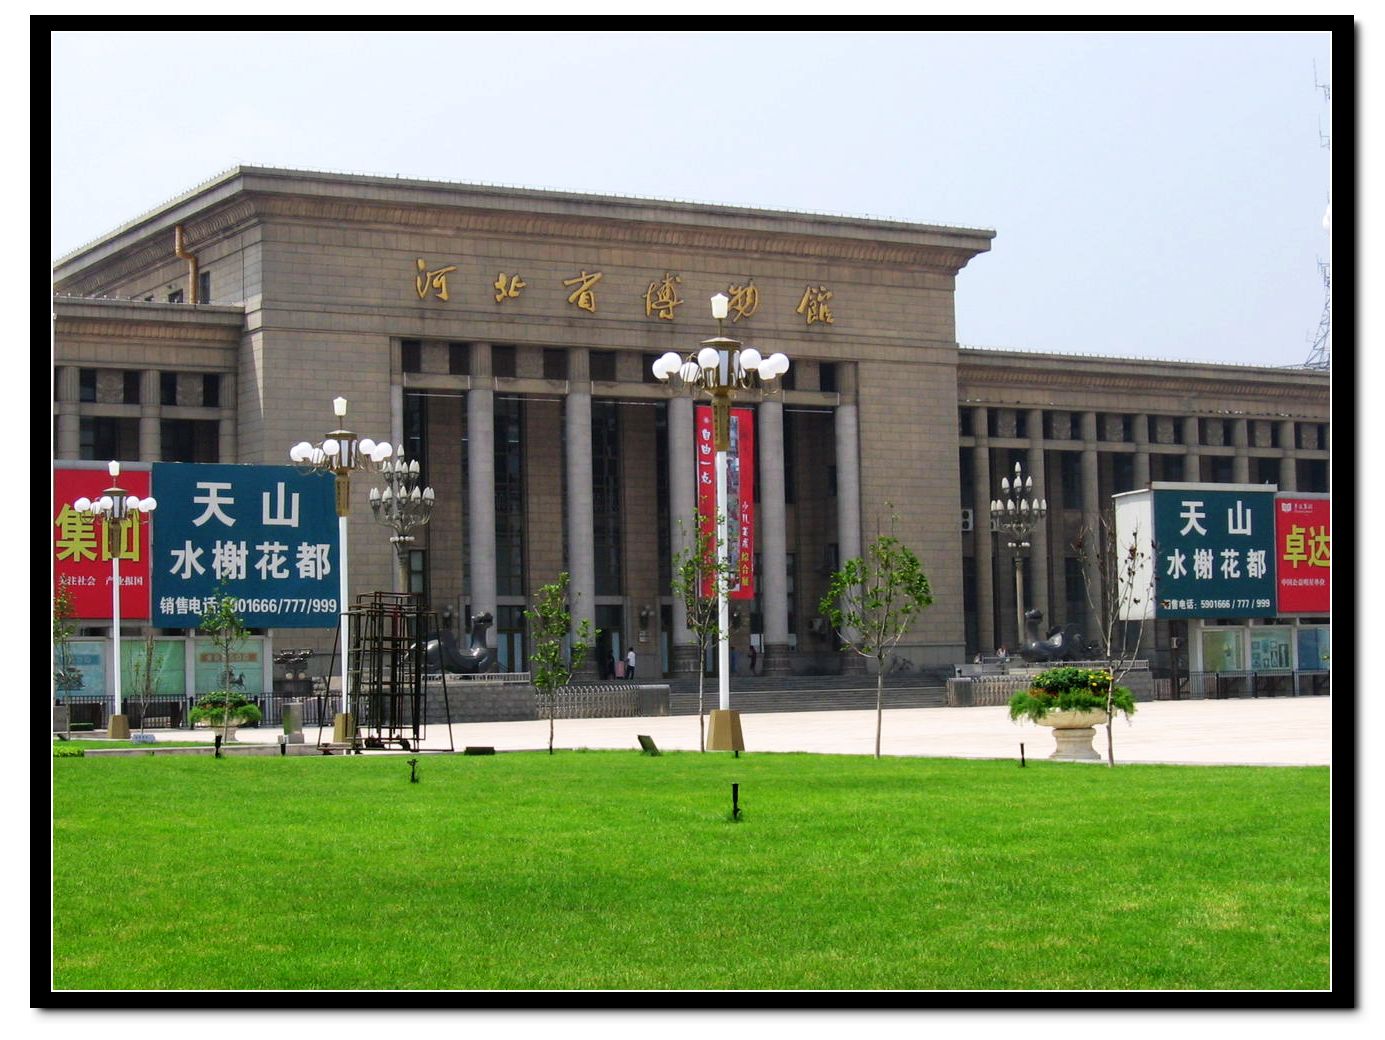 河北省免费开放博物馆